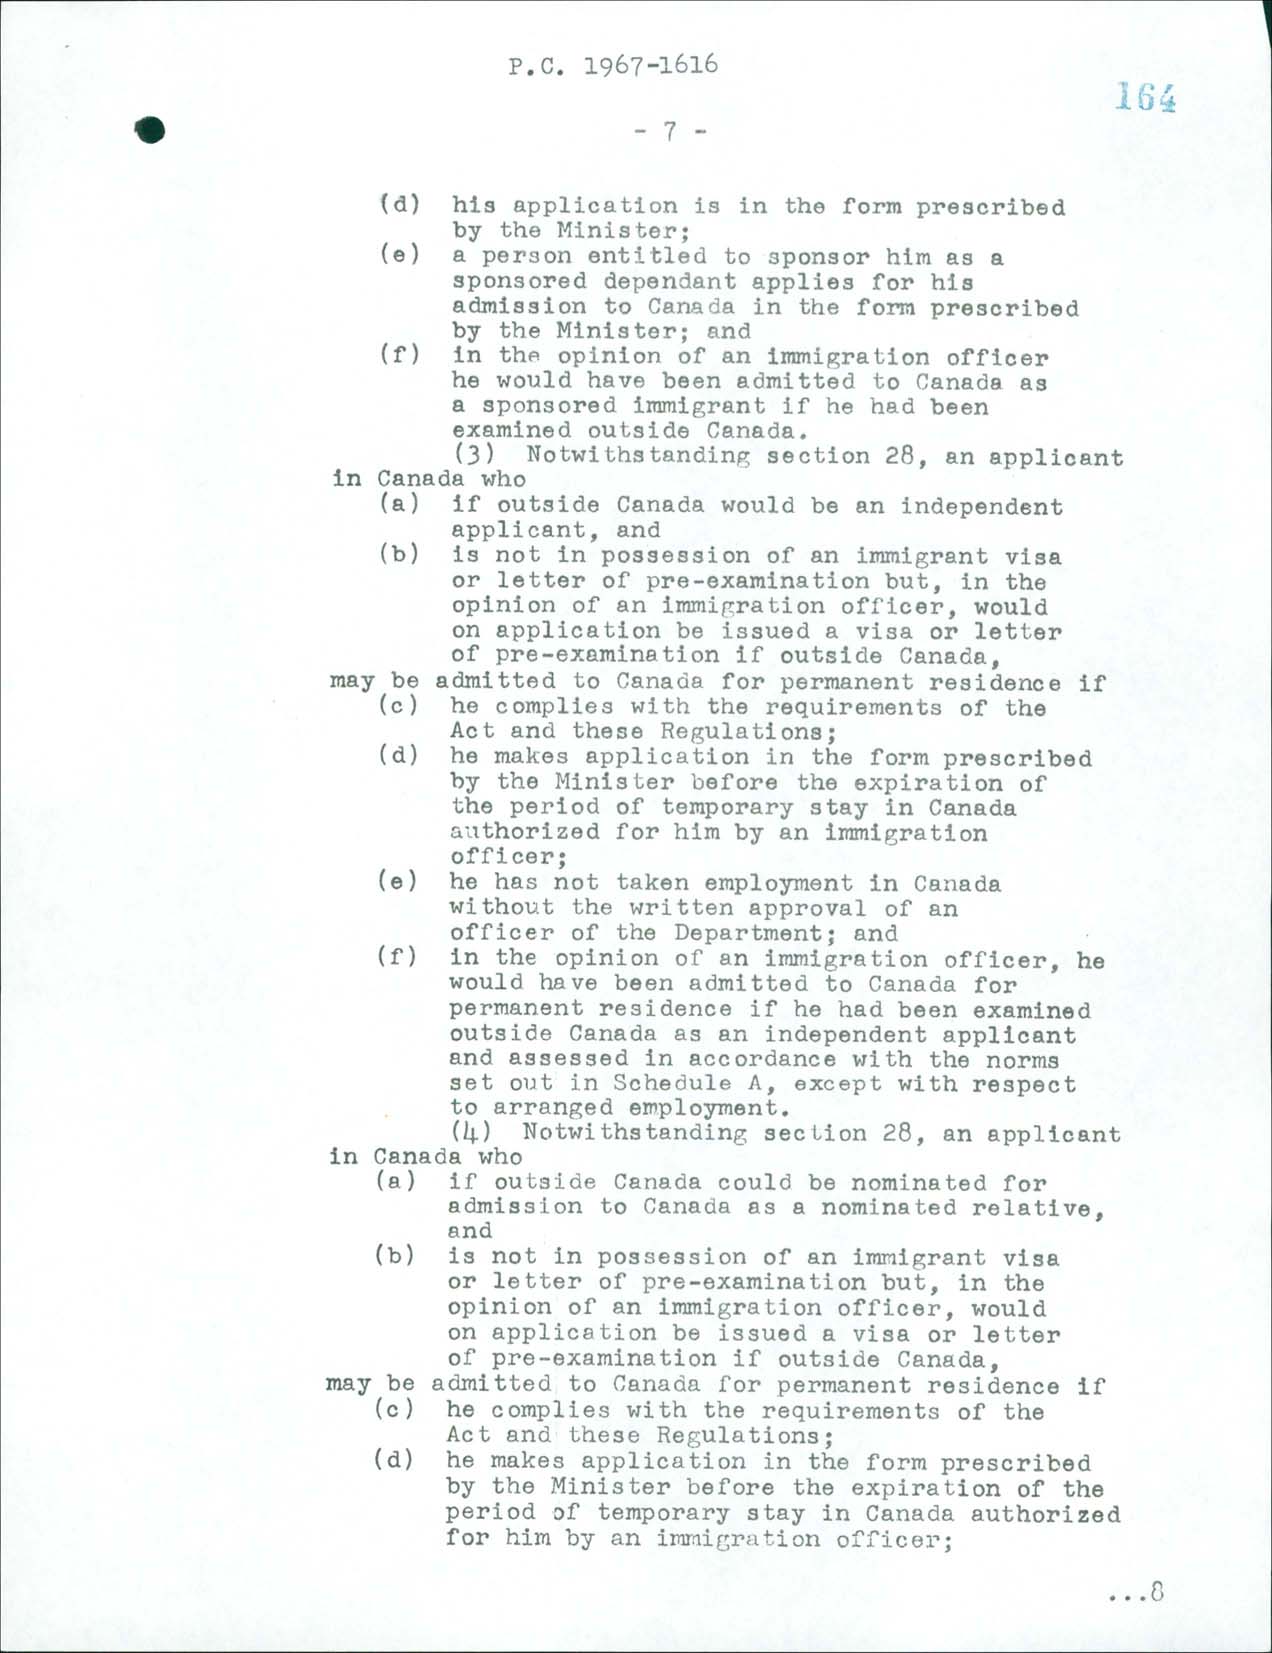 Page 7 Règlement sur l’immigration, Décret du Conseil CP 1967-1616, 1967